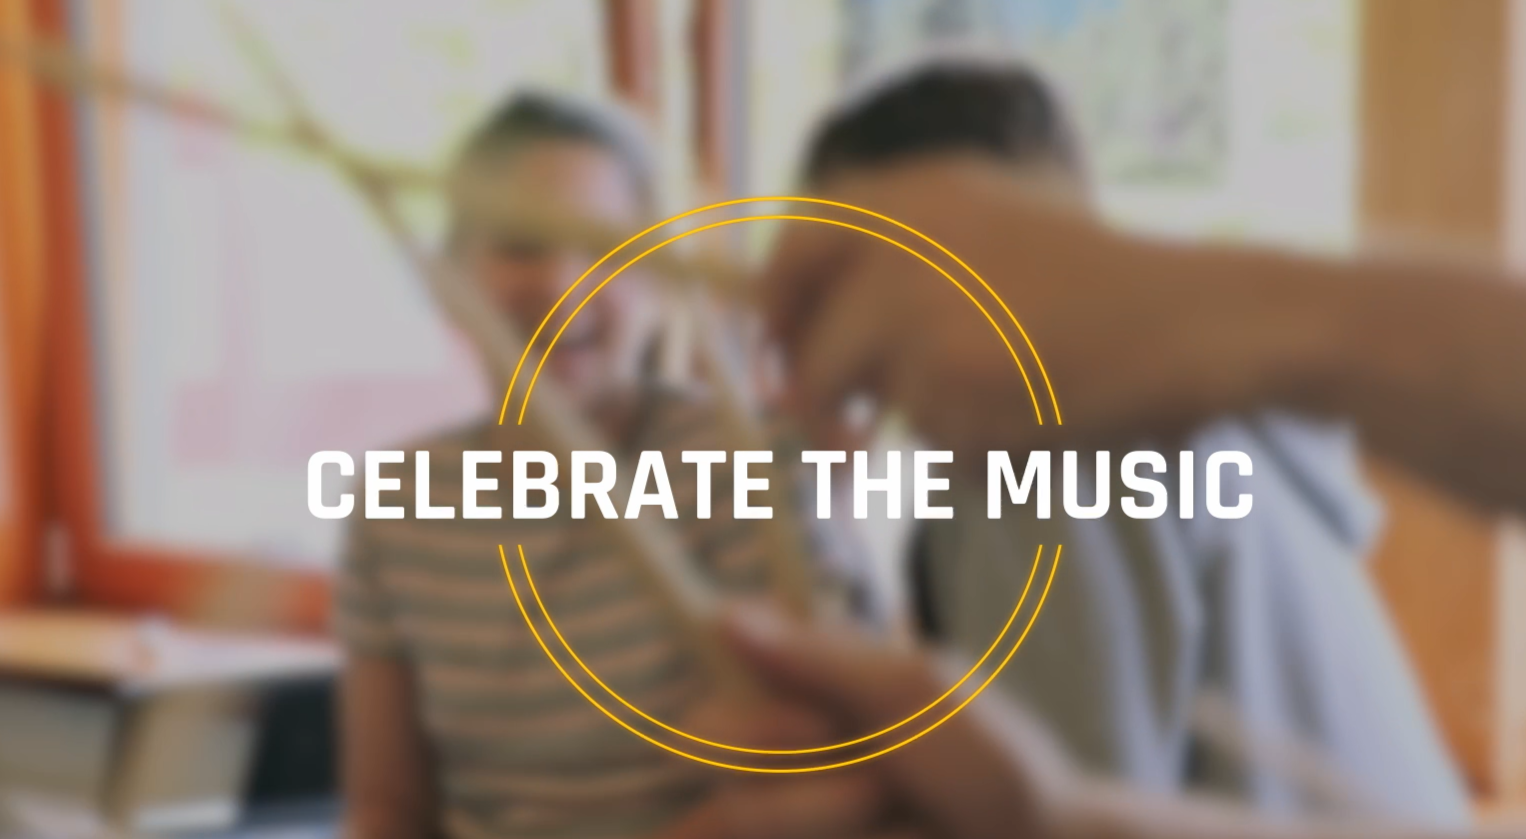 Celebrate the music - Der Film